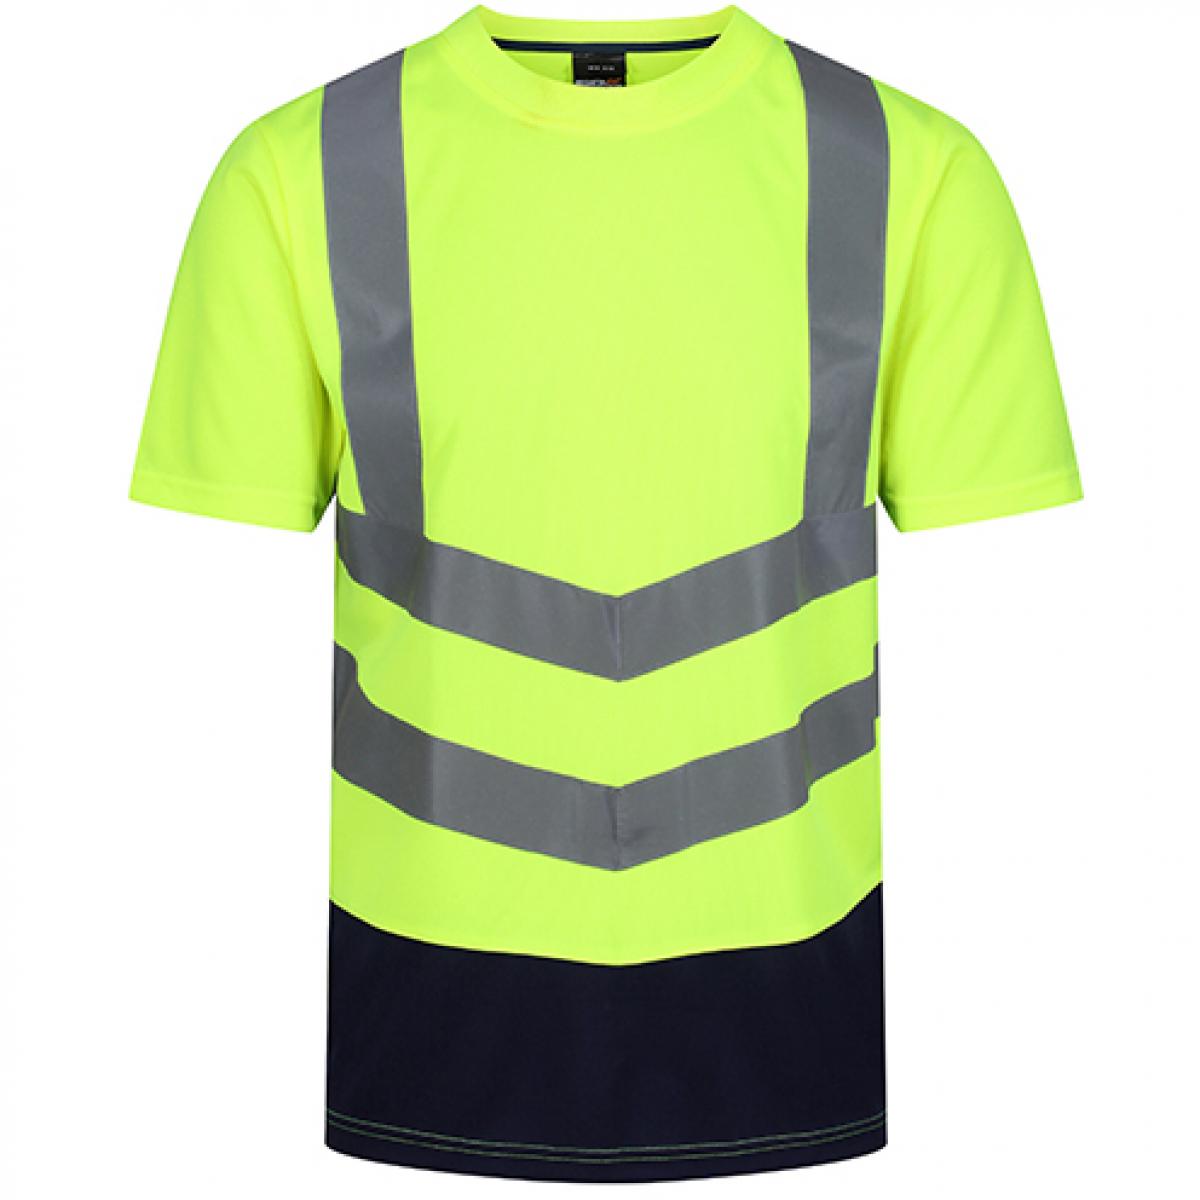 Hersteller: Regatta High Visibility Herstellernummer: TRS194 Artikelbezeichnung: Pro Hi Vis Short Sleeve T-Shirt - Sicherheits-T-Shirt Farbe: Yellow/Navy